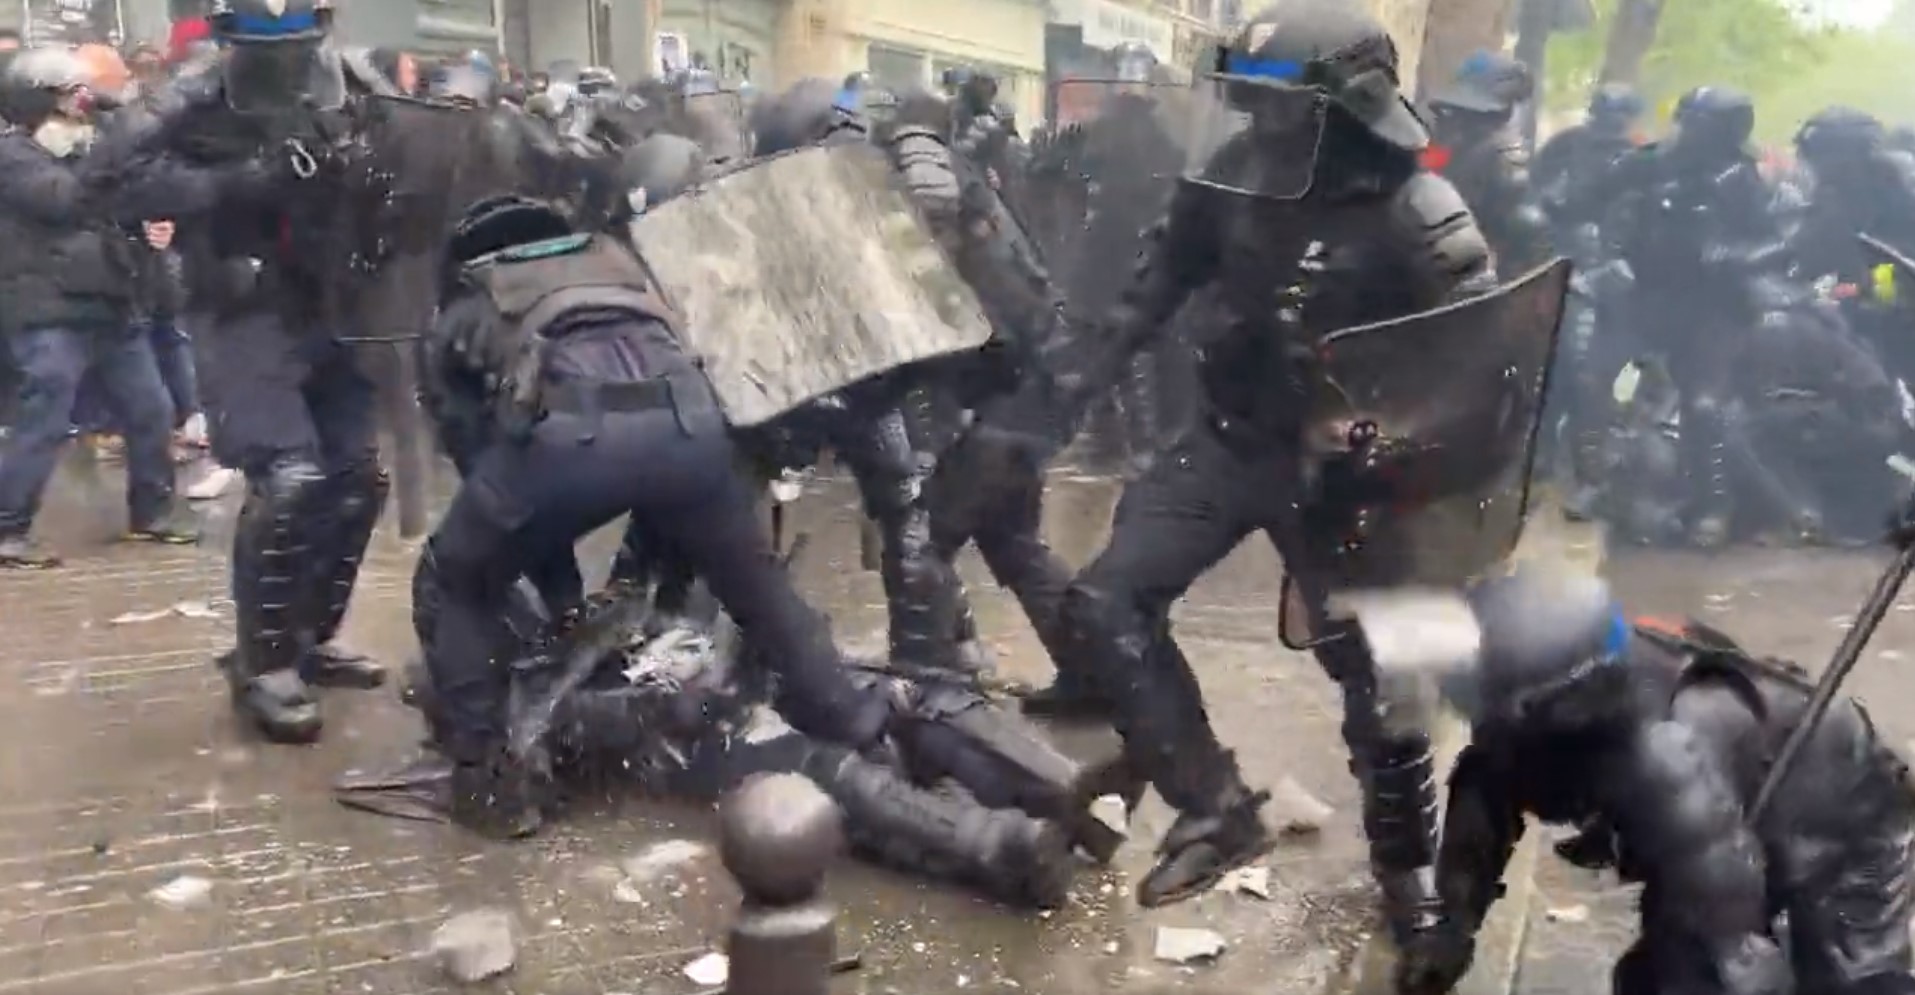 Prancis Mencekam! Aksi Unjuk Rasa Buruh Pada May Day Berujung 'Medan Pertempuran'